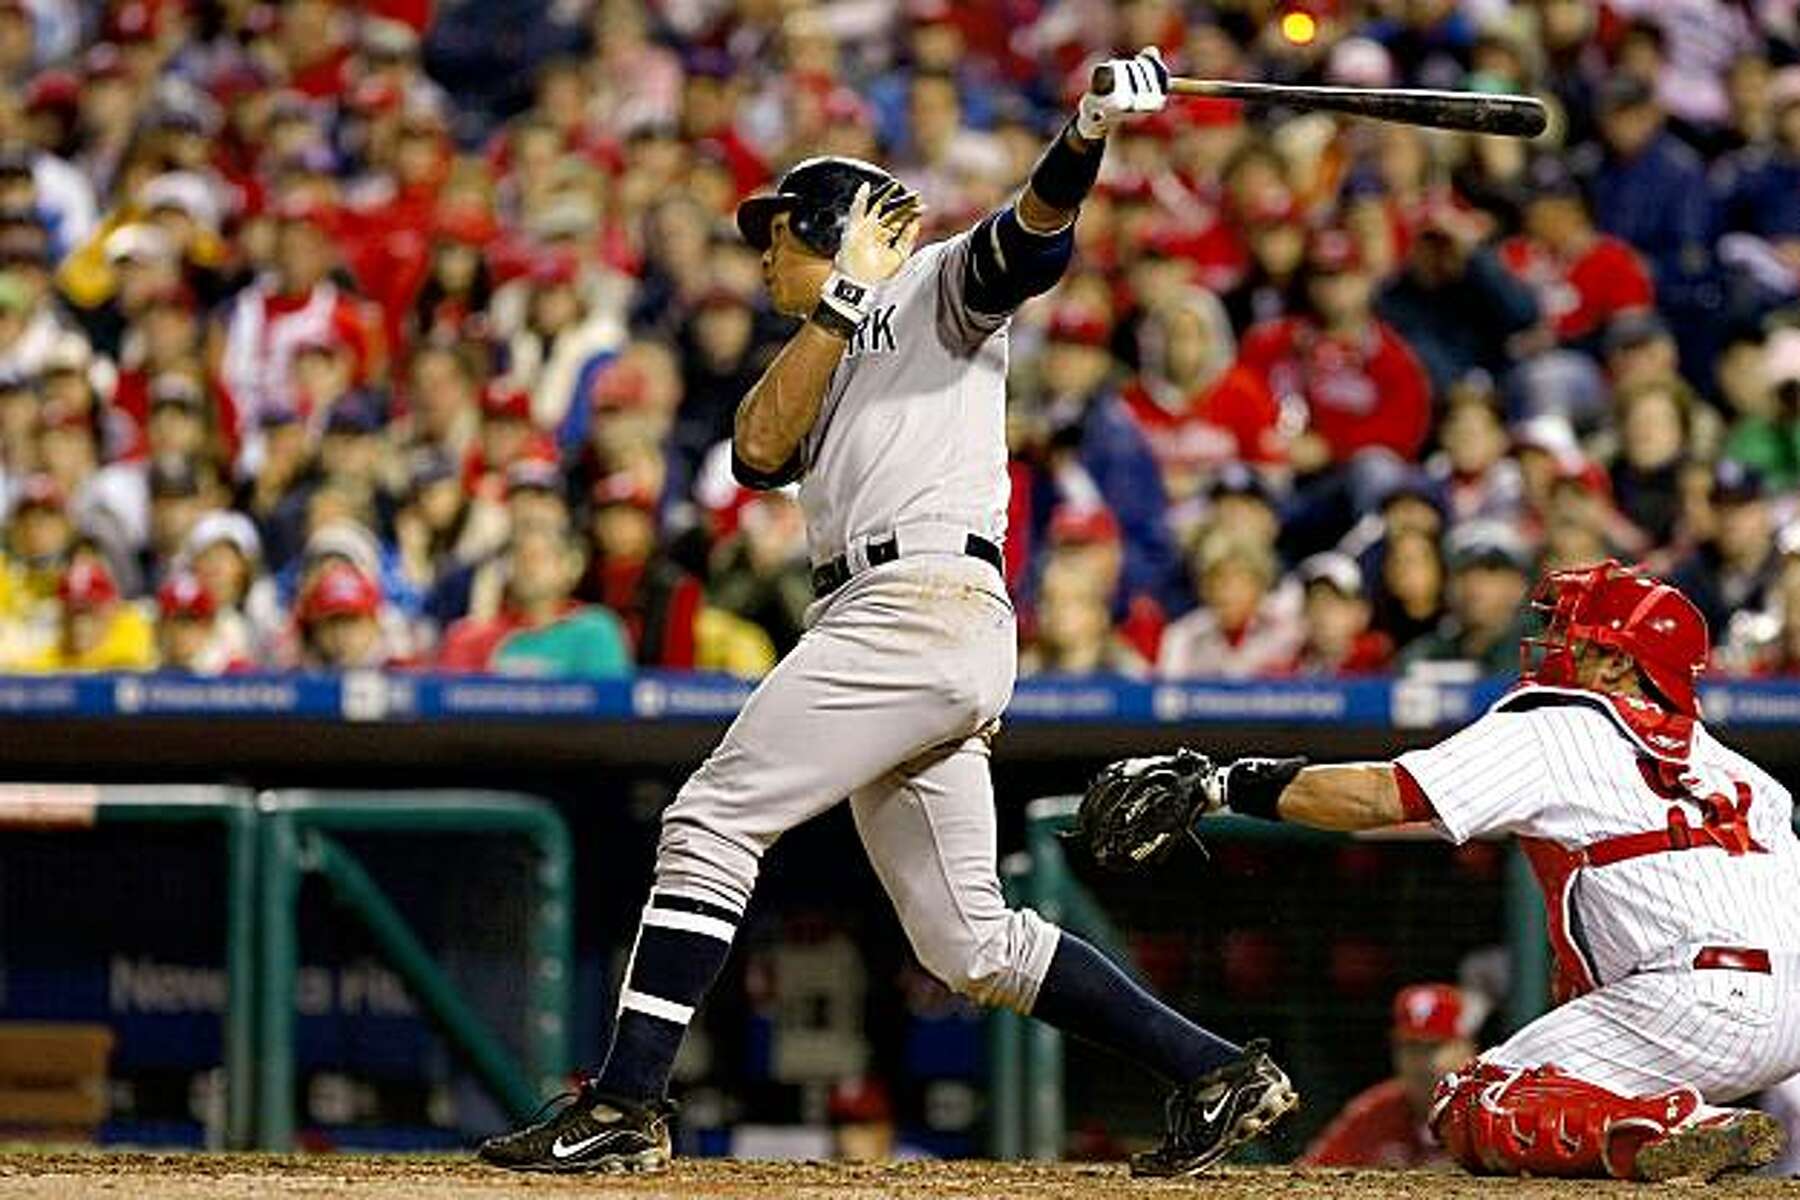 Nick Swisher Game three of the 2009 MLB World Series 2 Run Home Run 